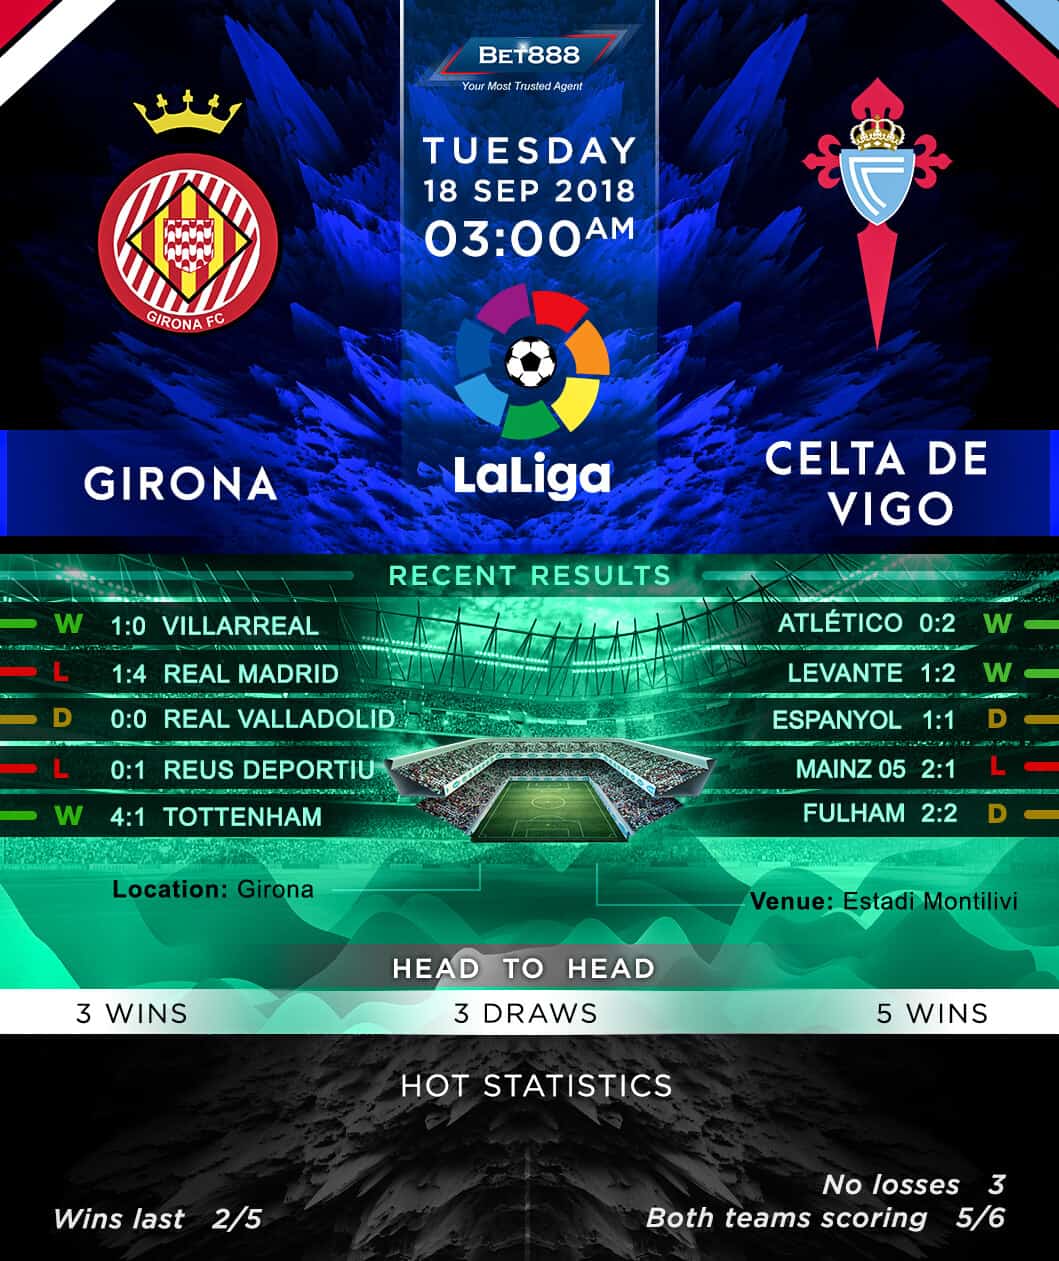 Girona vs Celta Vigo 18/09/18